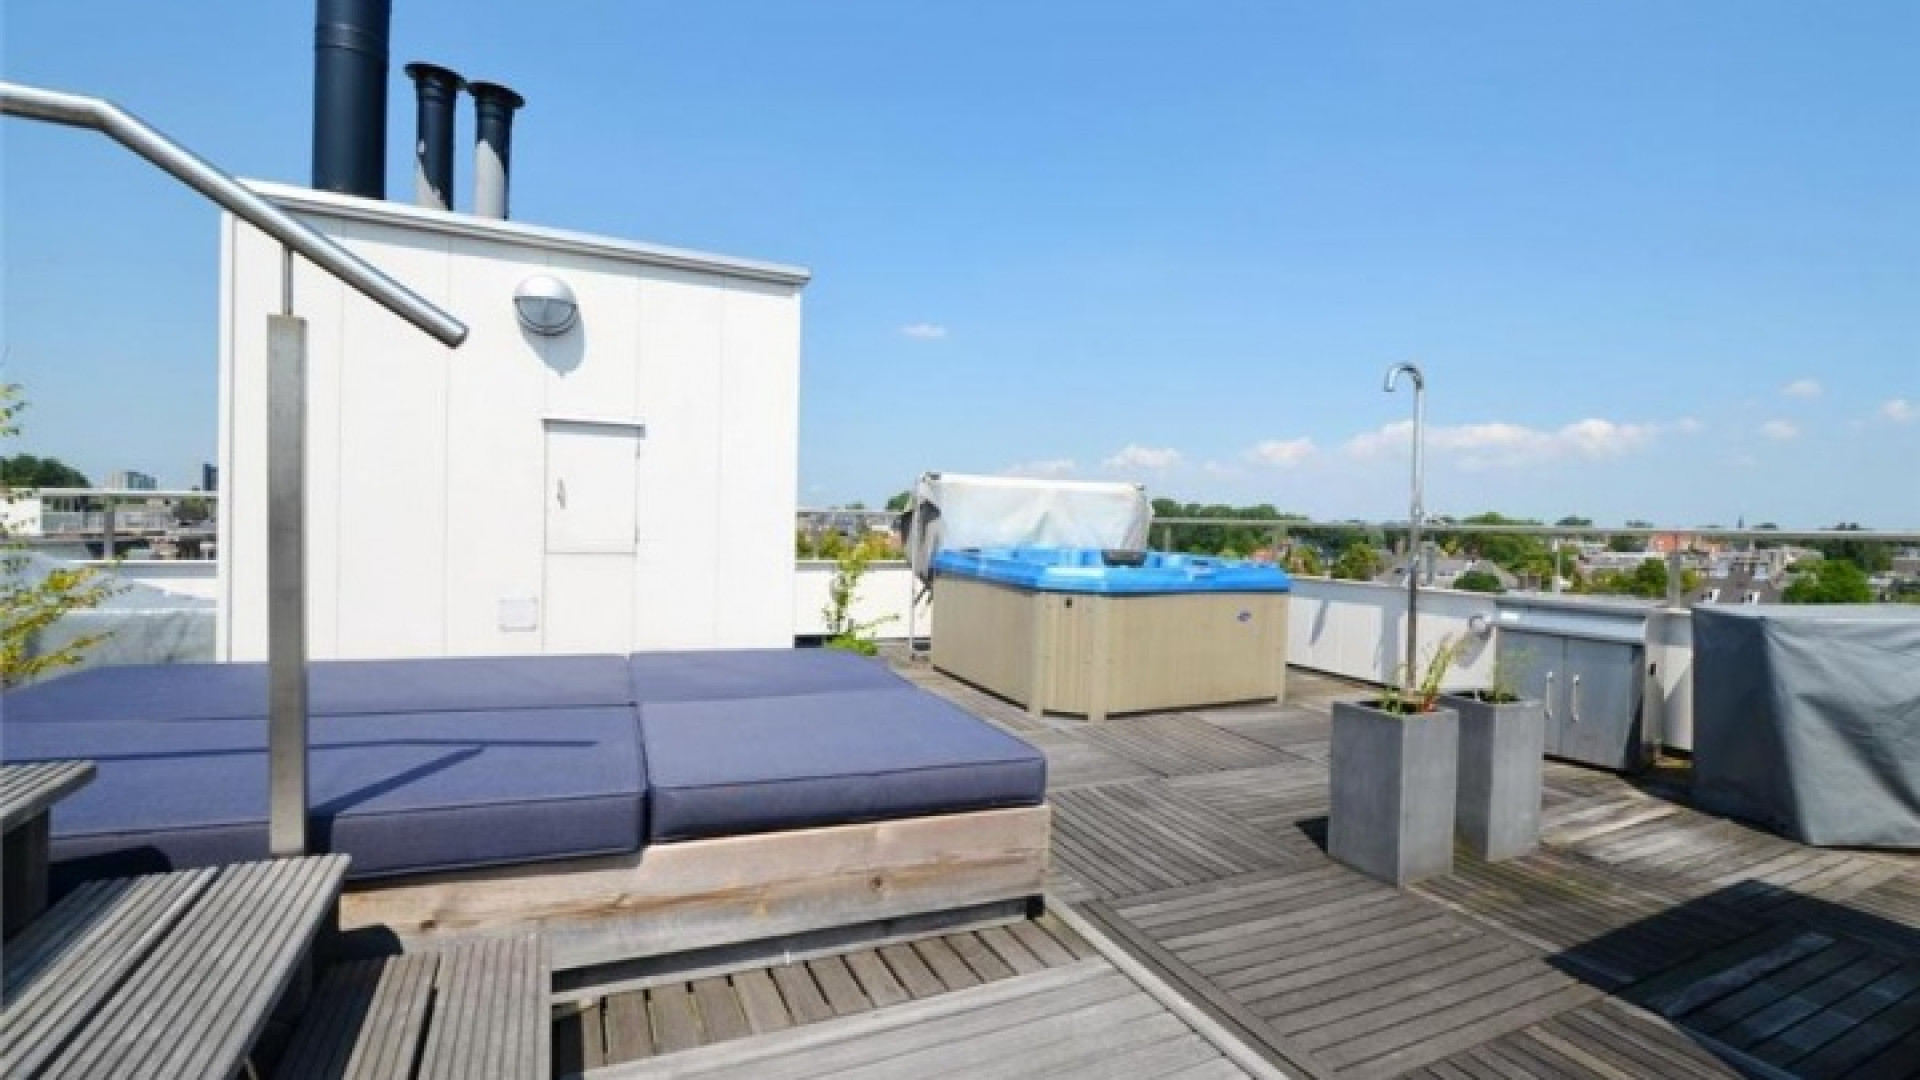 Frank Rijkaard zoekt huurder voor zijn luxe dubbele bovenhuis. Zie foto's